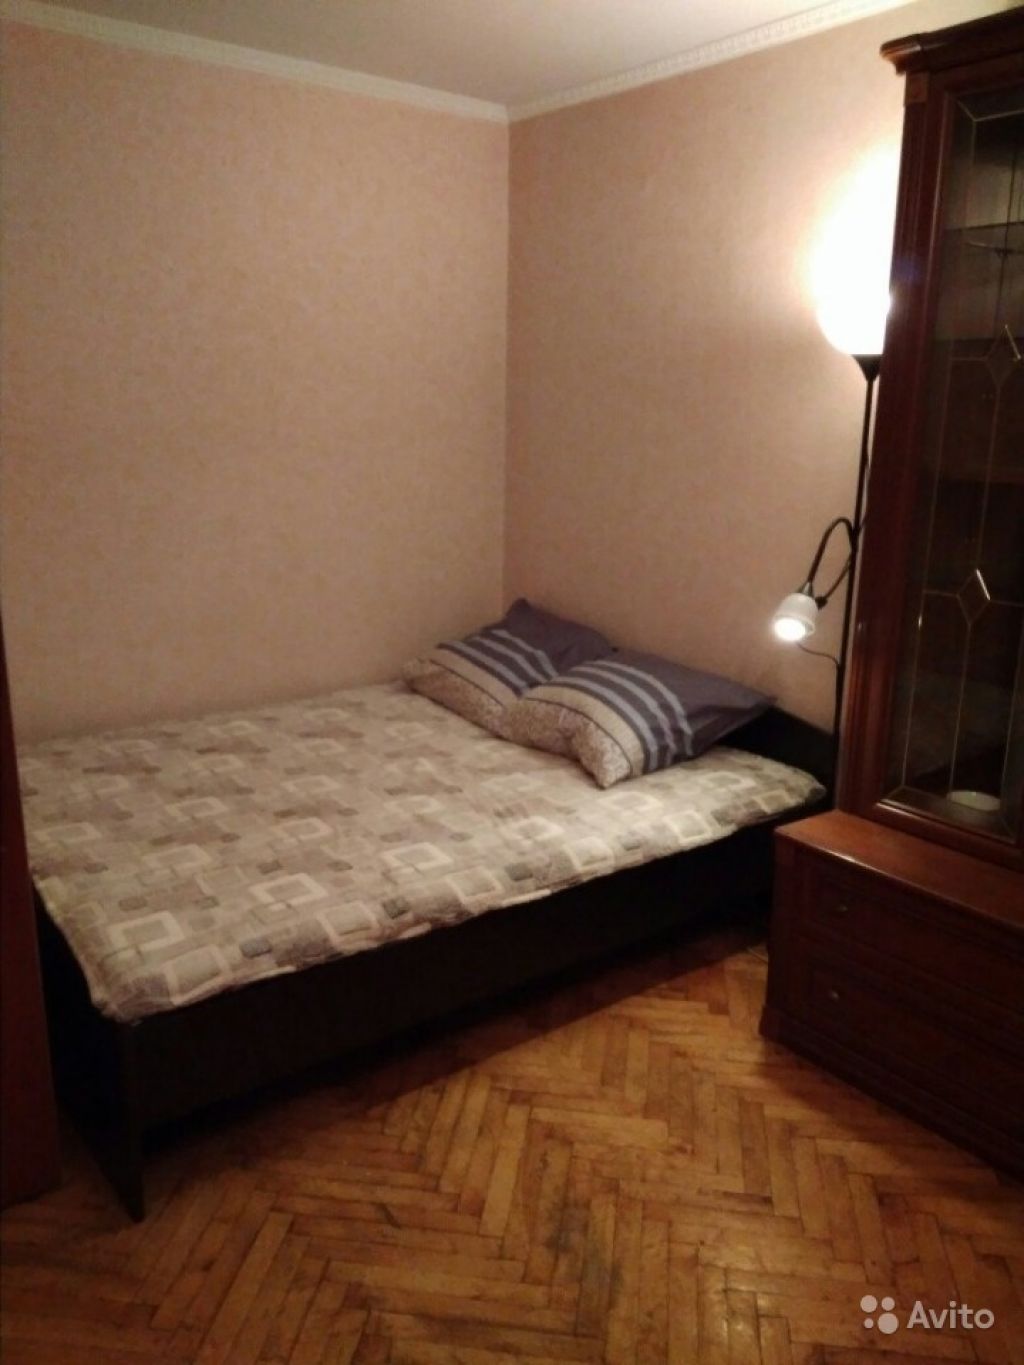 Сдам квартиру посуточно 1-к квартира 34 м² на 1 этаже 14-этажного панельного дома в Москве. Фото 1